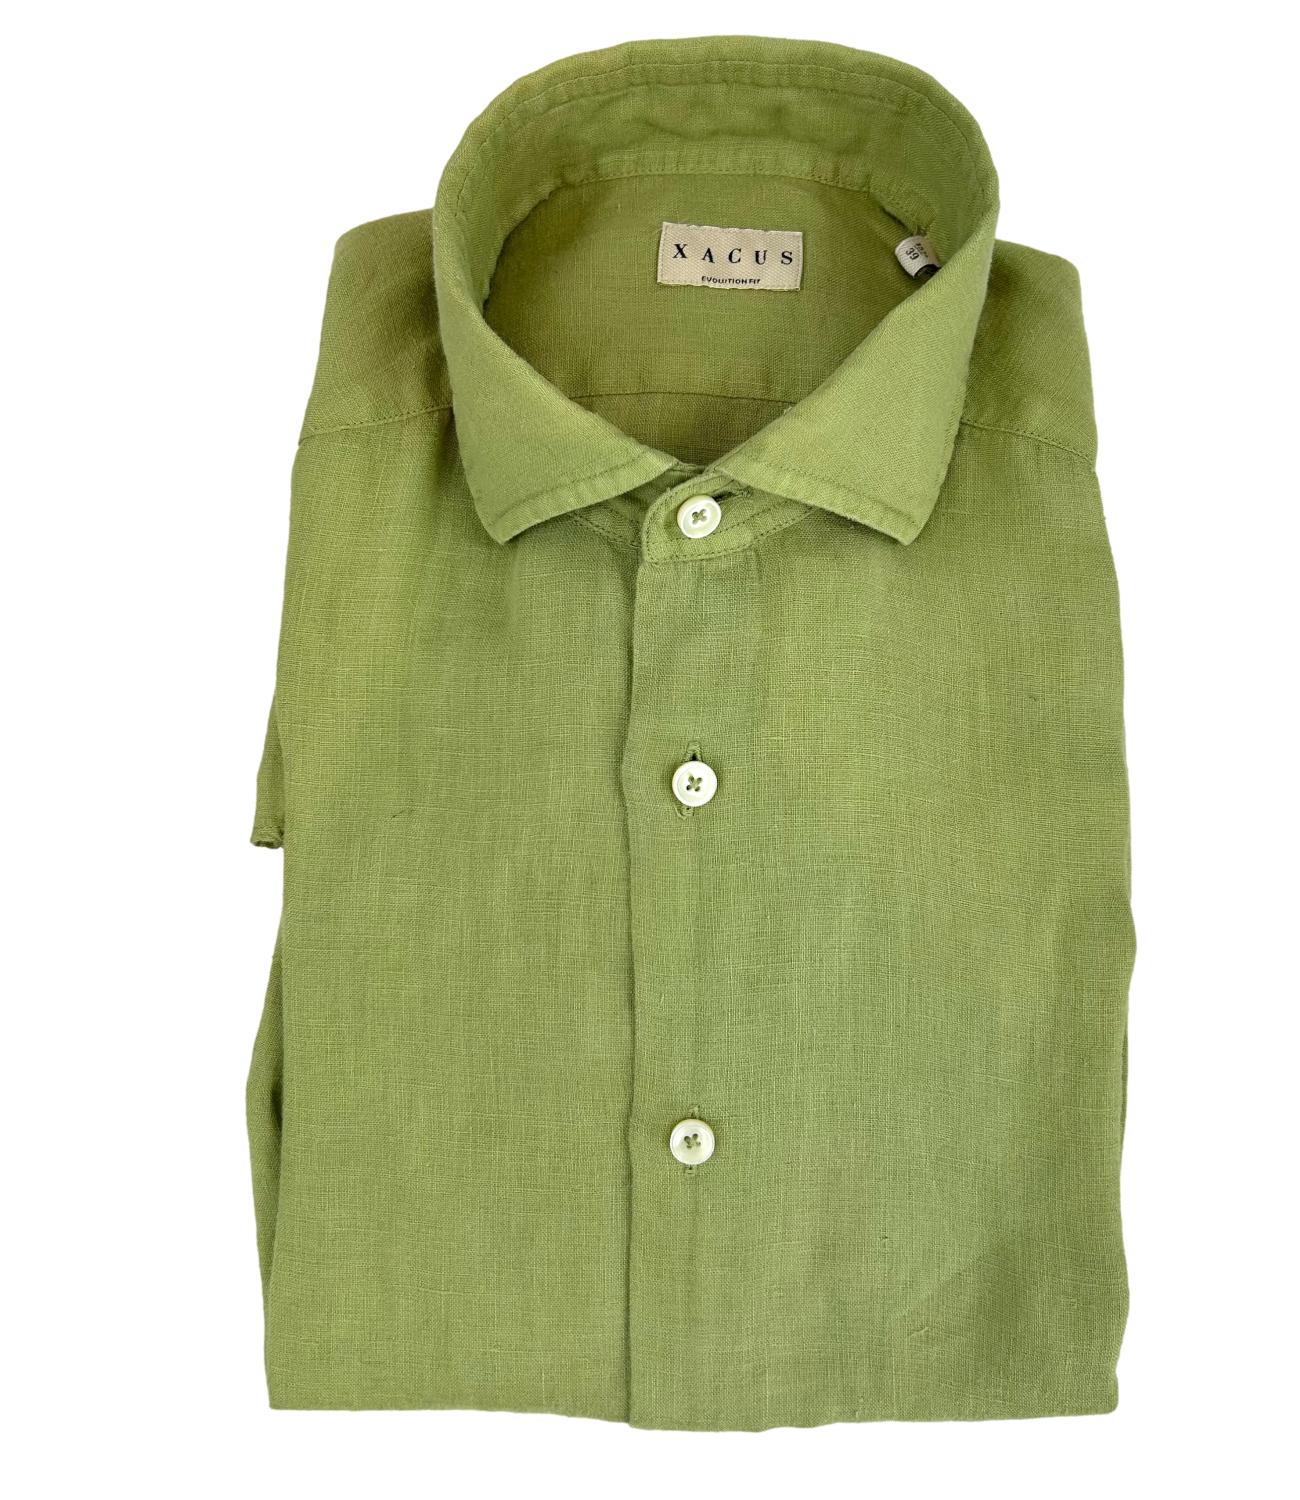 Men's apple green linen shirt